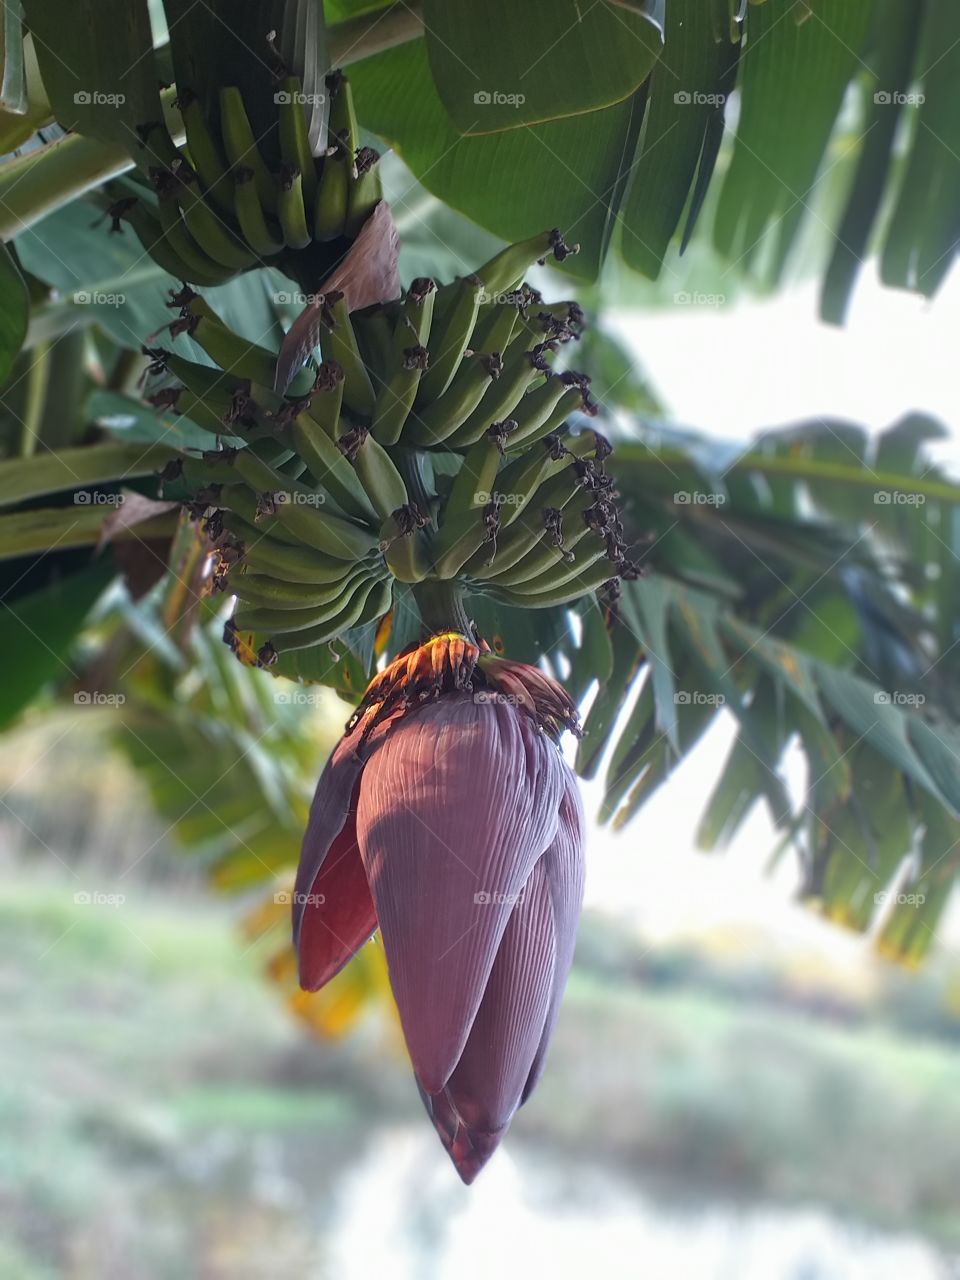 Banana cacho